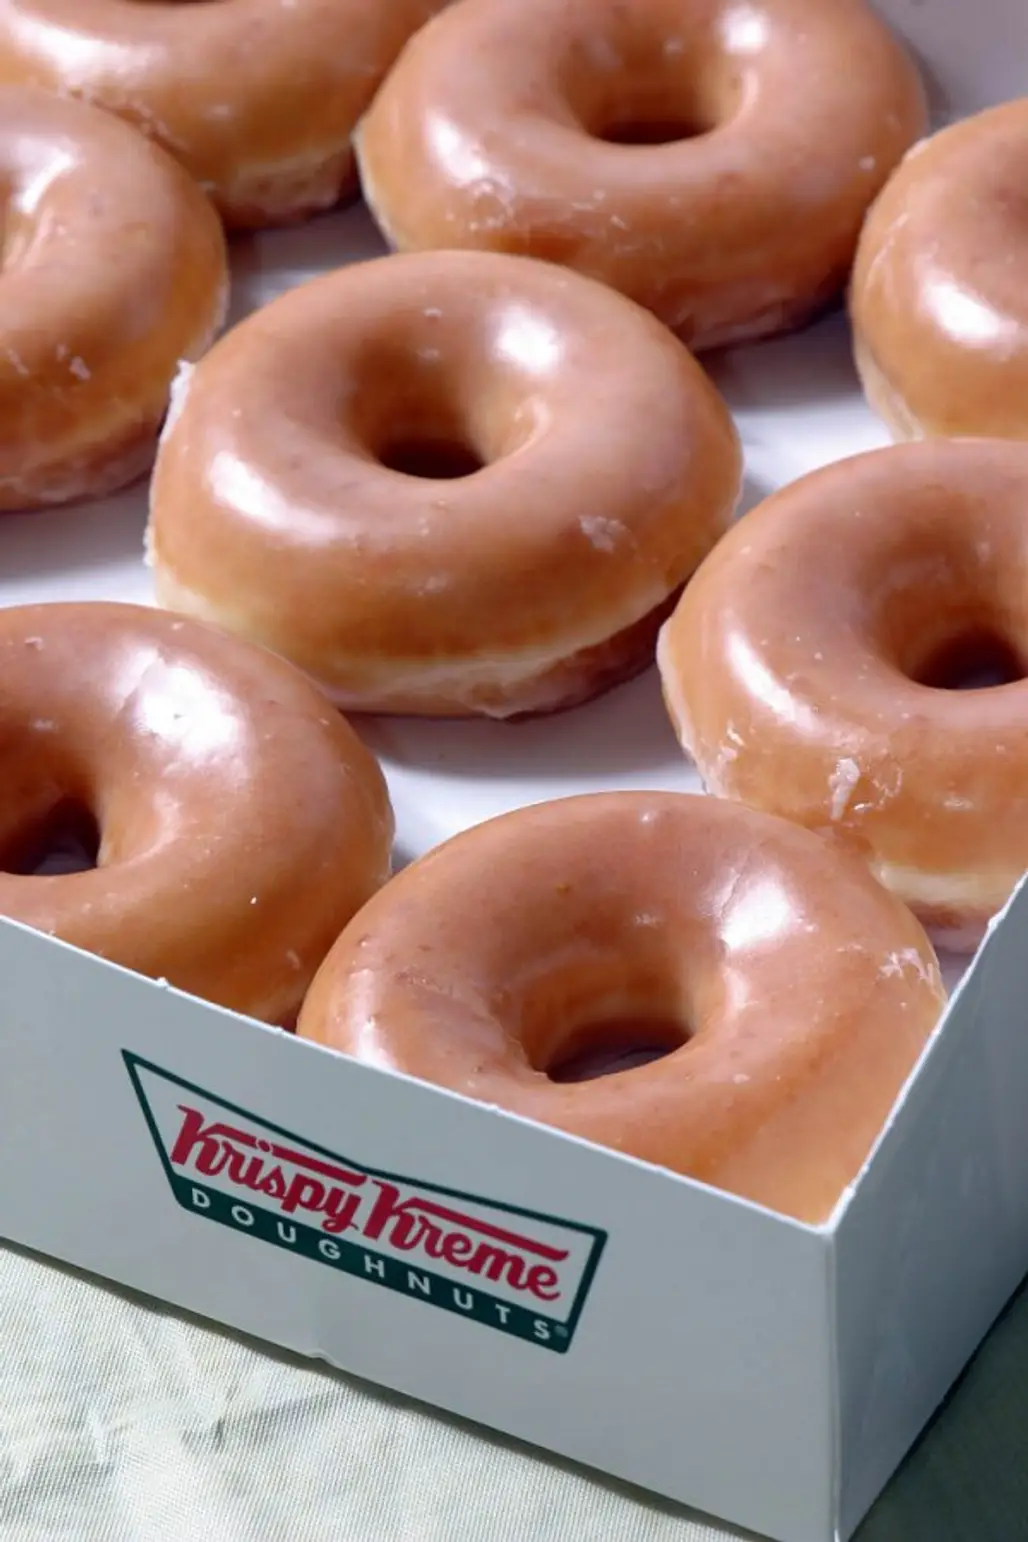 Copy Cat Recipe for Krispy Kreme Donuts